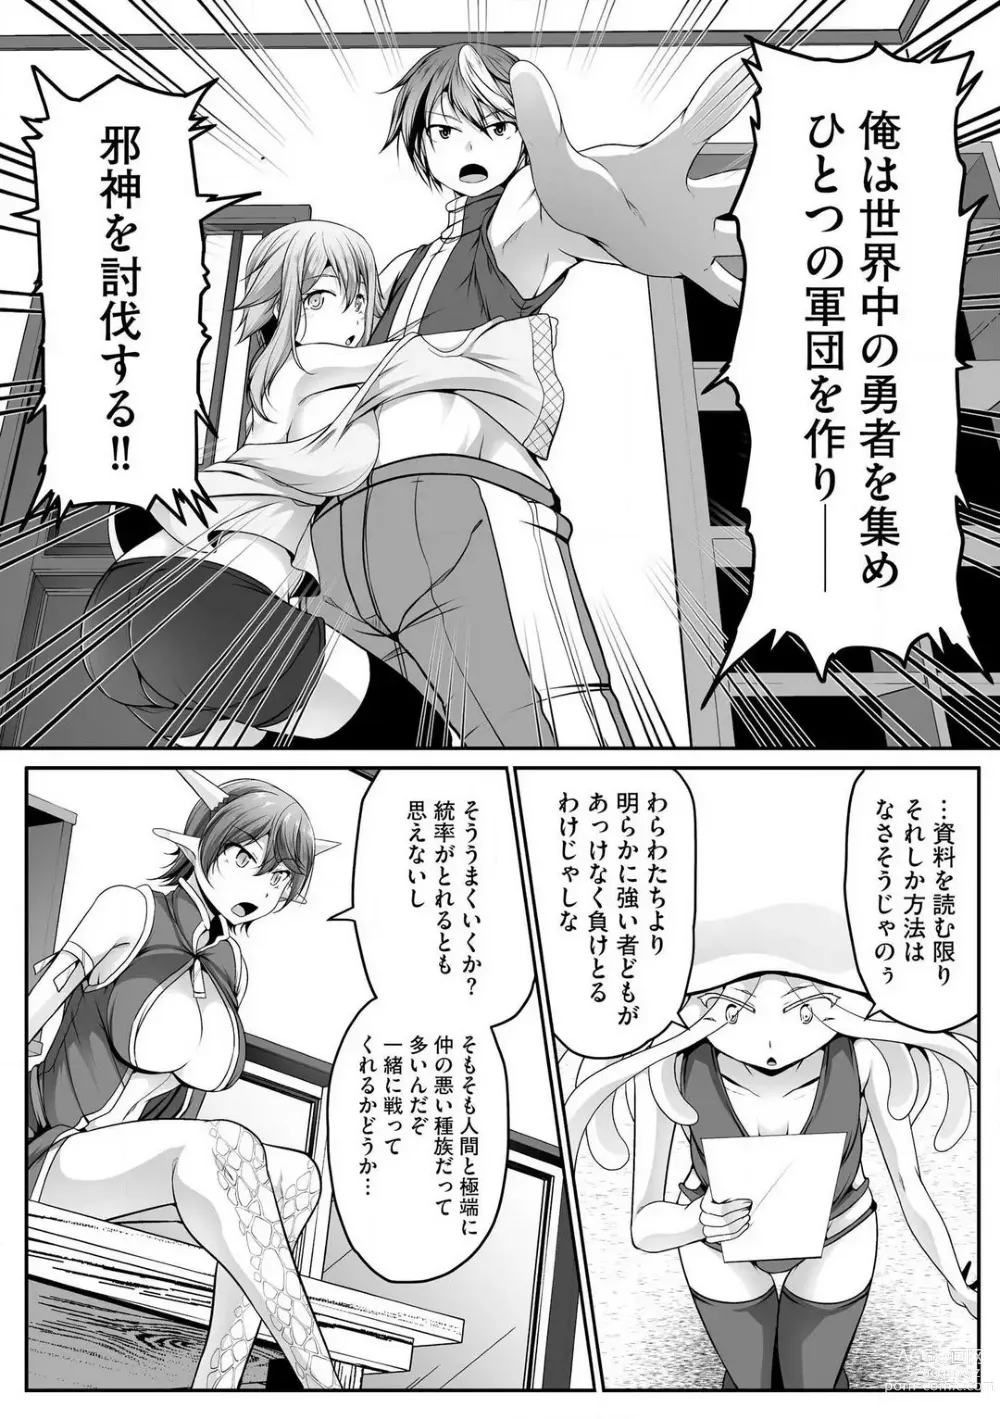 Page 347 of manga Cheat Skill Shihai